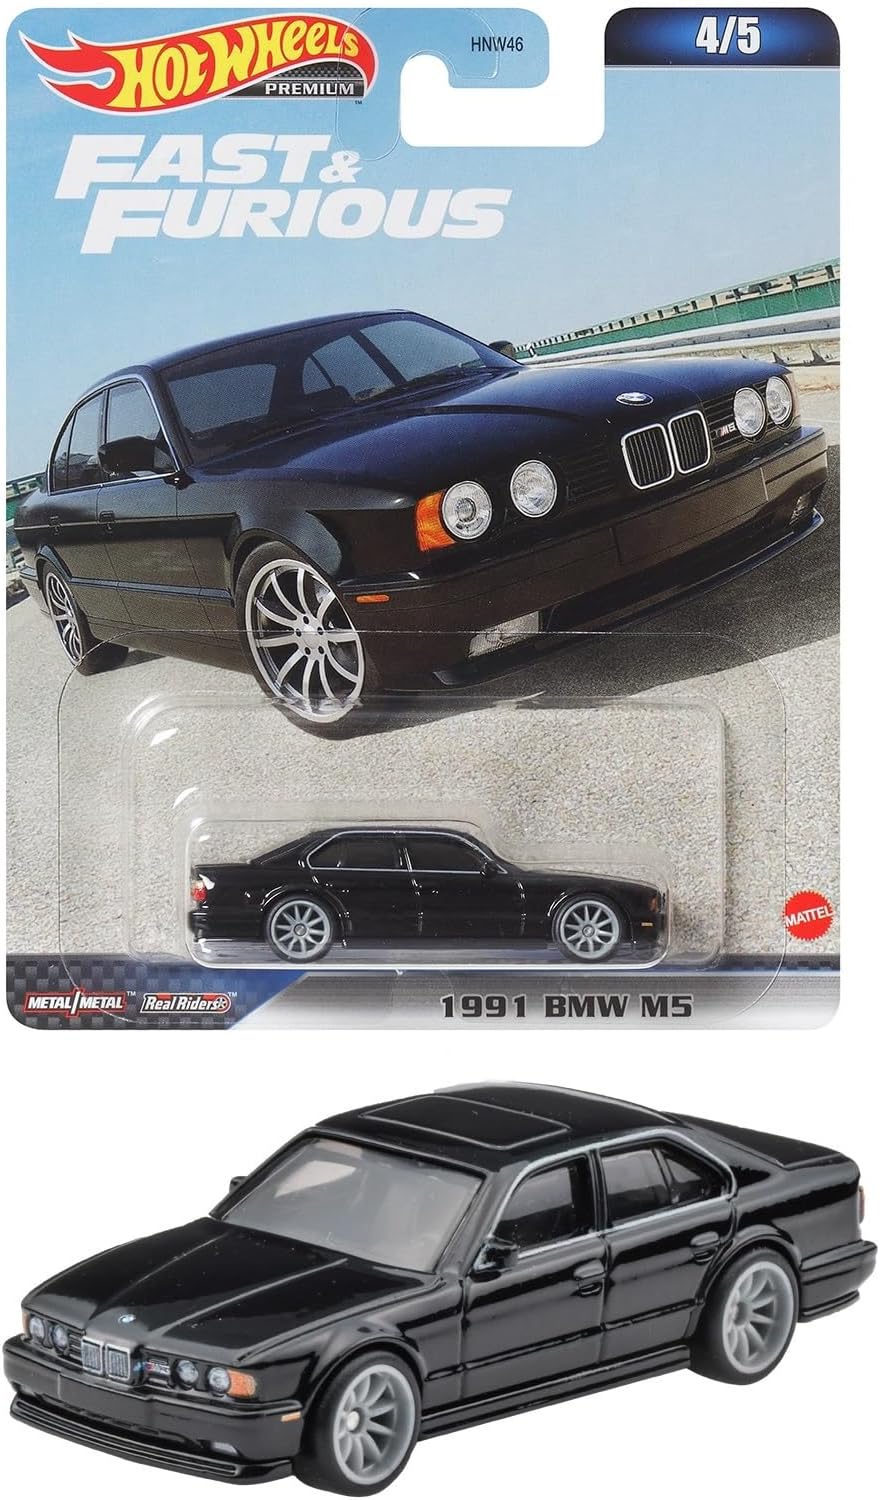 ホットウィール(Hot Wheels) ワイルド スピード - 1991 BMW M5 【3才~】 HKD28